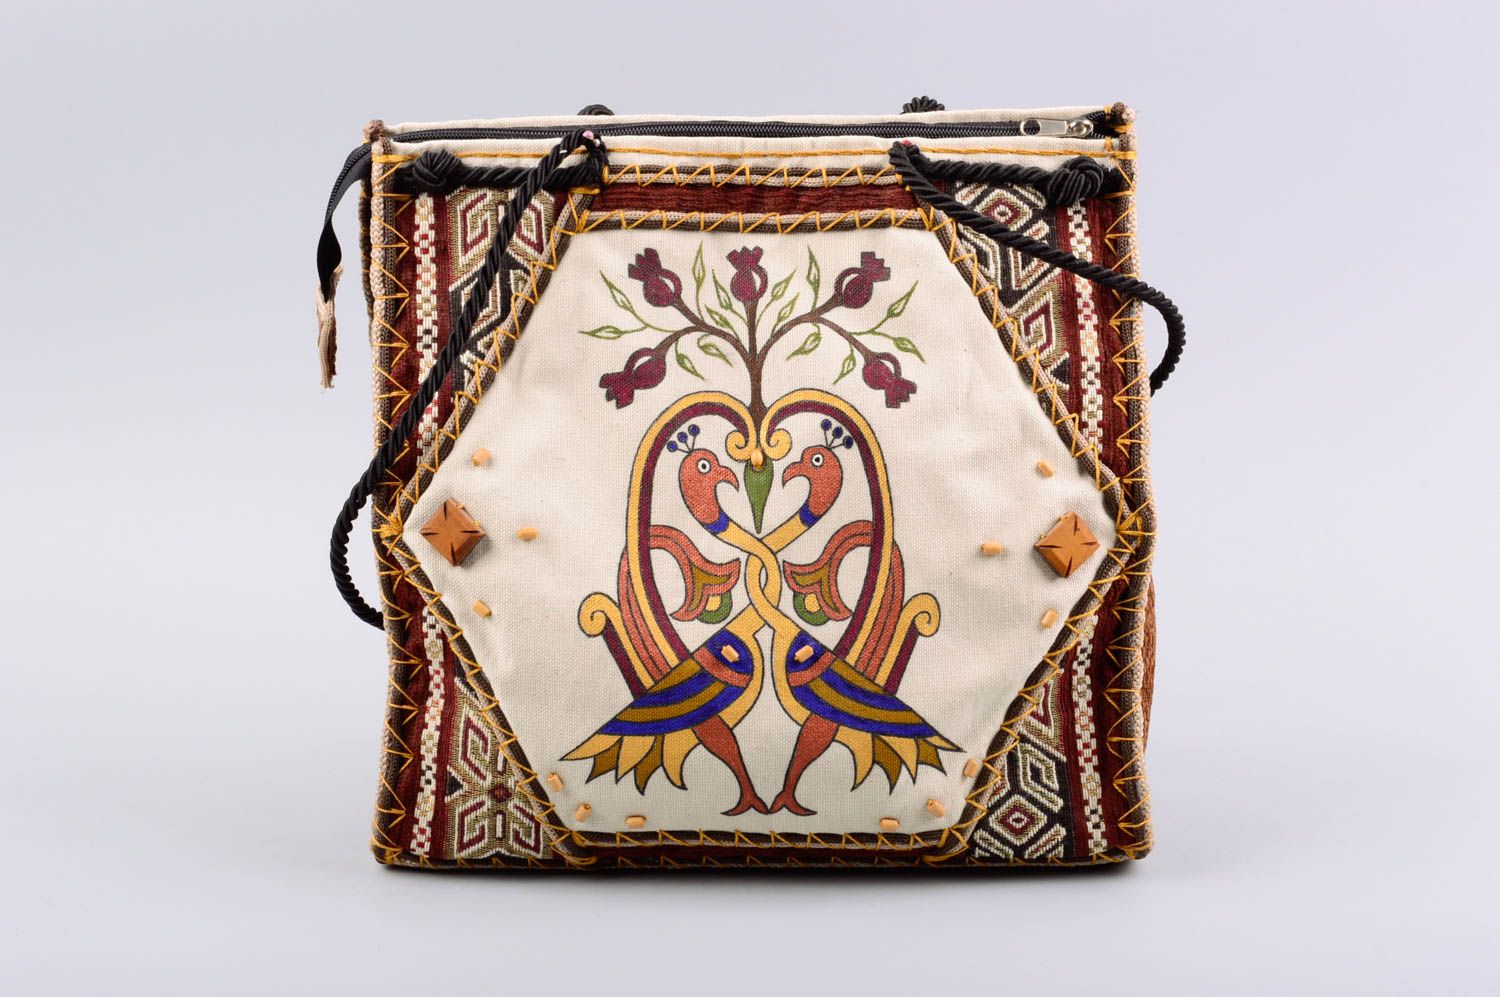 Женская текстильная сумка ручного пошива с длинным ремнем и этническими мотивами фото 1